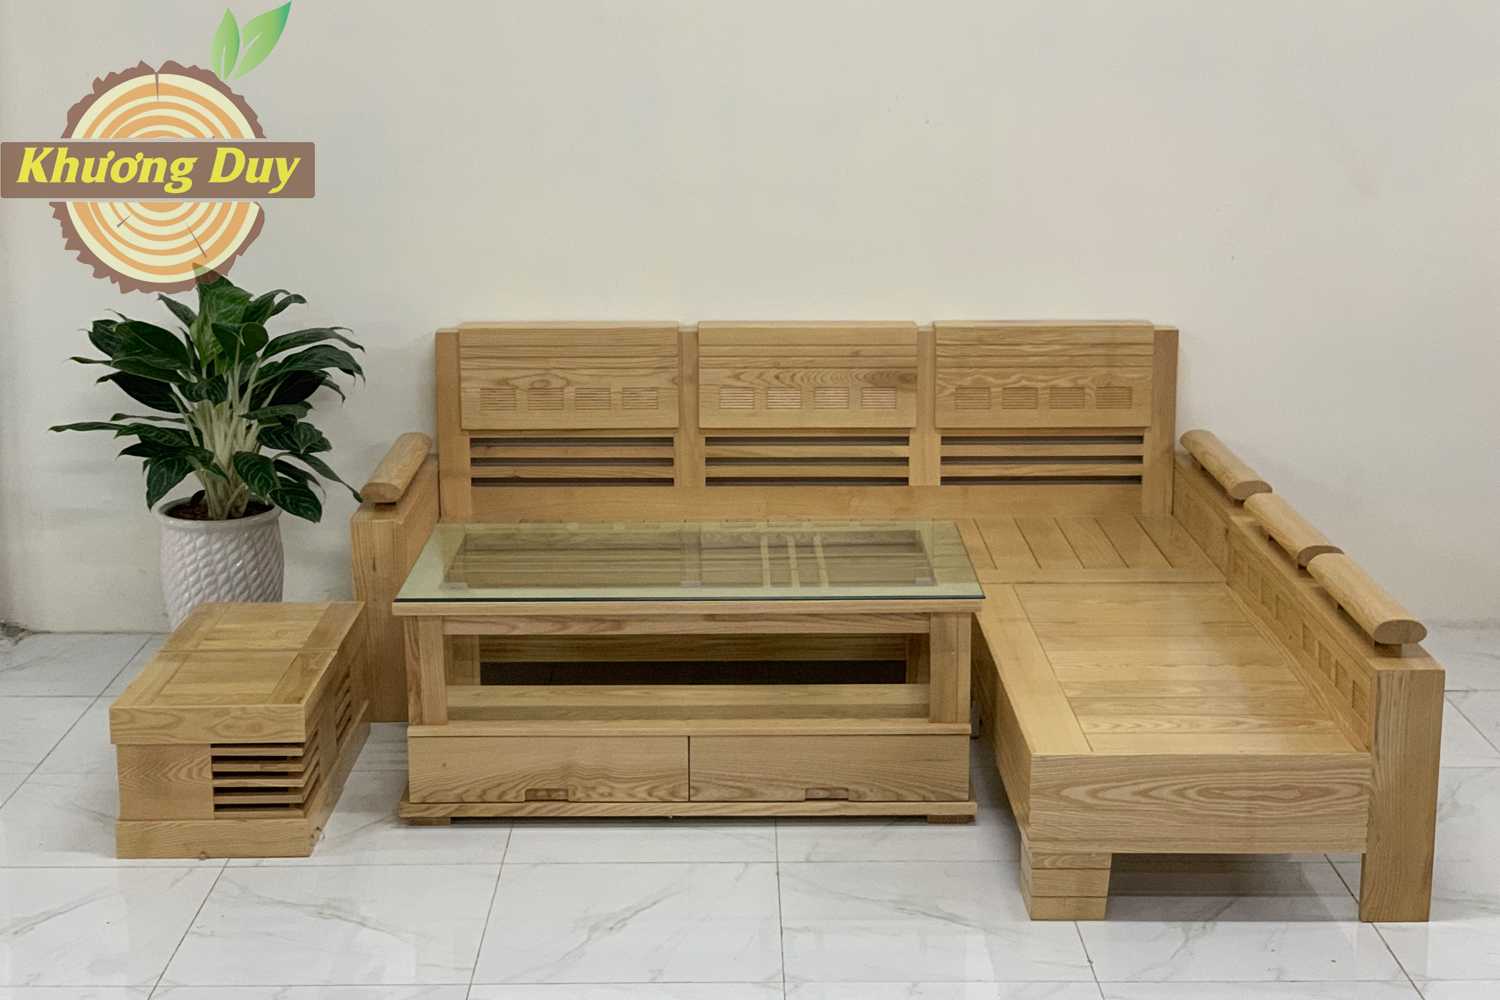 Bàn Ghế sofa gỗ chữ L gỗ Sồi ✅ thương hiệu uy tín✅ mang đến cho phòng khách đẹp, cùng với thiết kế hiện đại, tính năng ưu việt không gian mới cho gia đình.